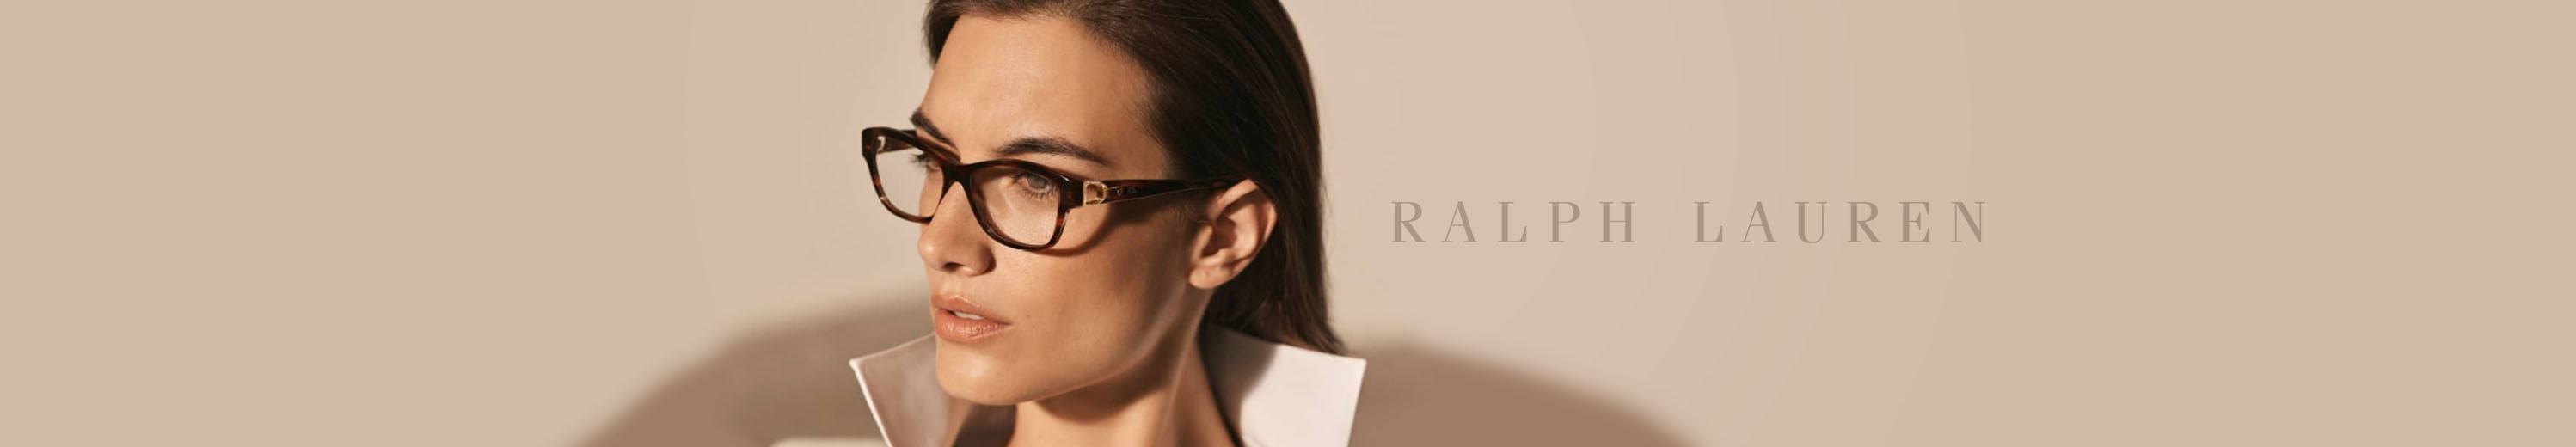 Ralph Lauren Eyeglasses for Women